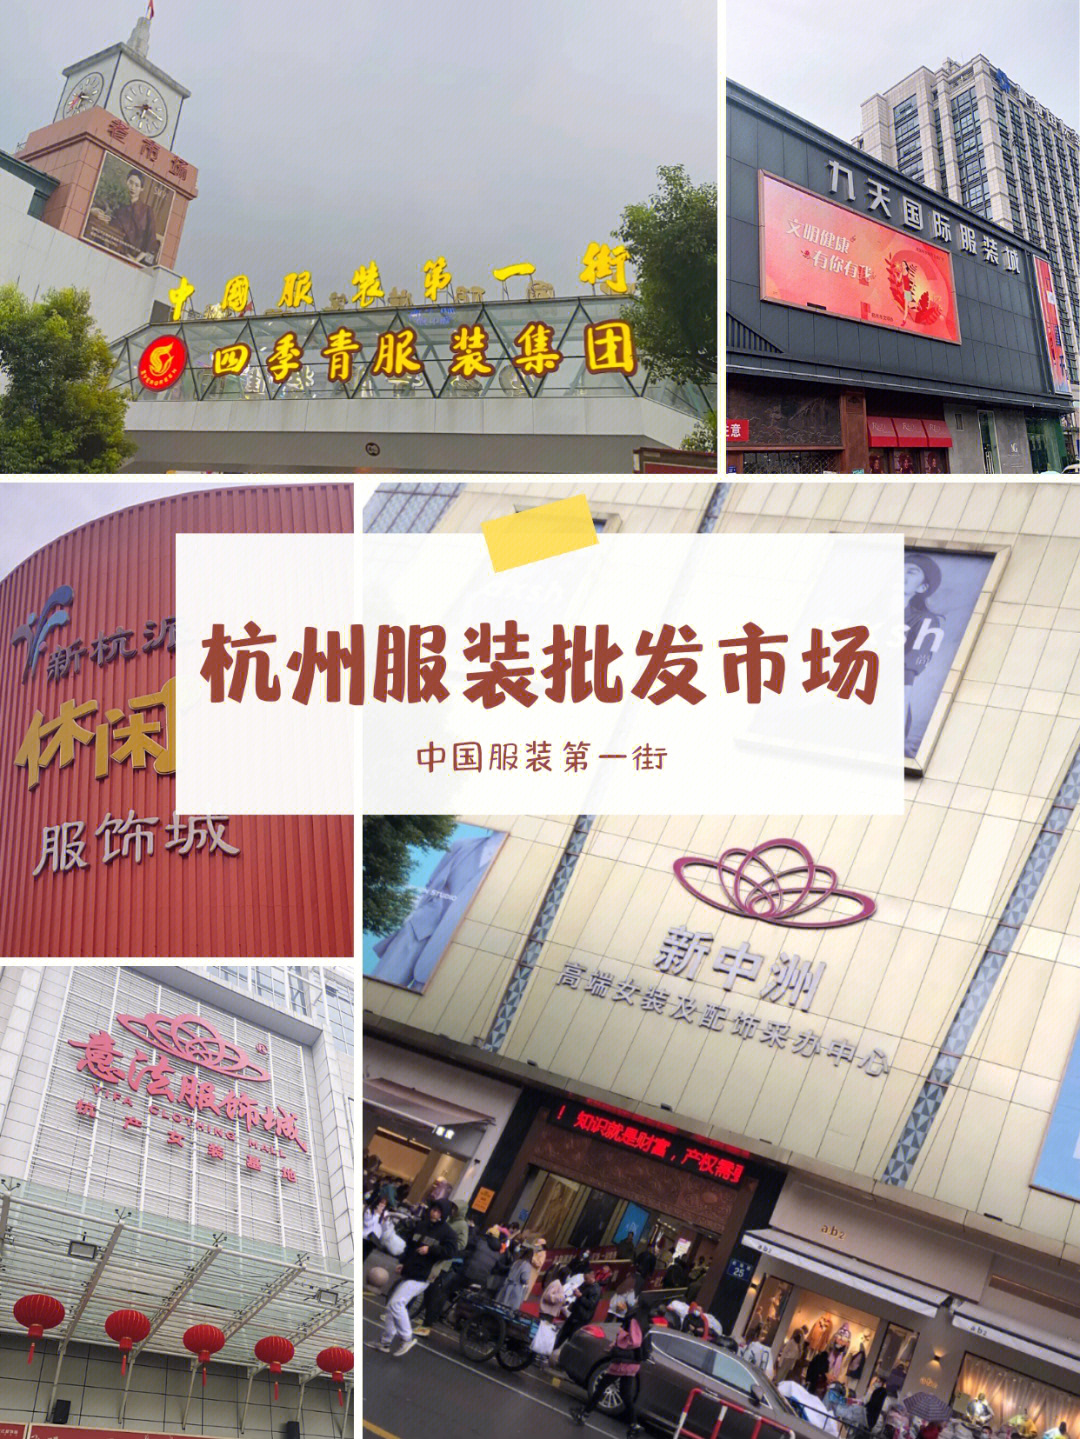 中国最大的服装批发地有三个:广州,杭州,北京,其中杭州服装批发市场